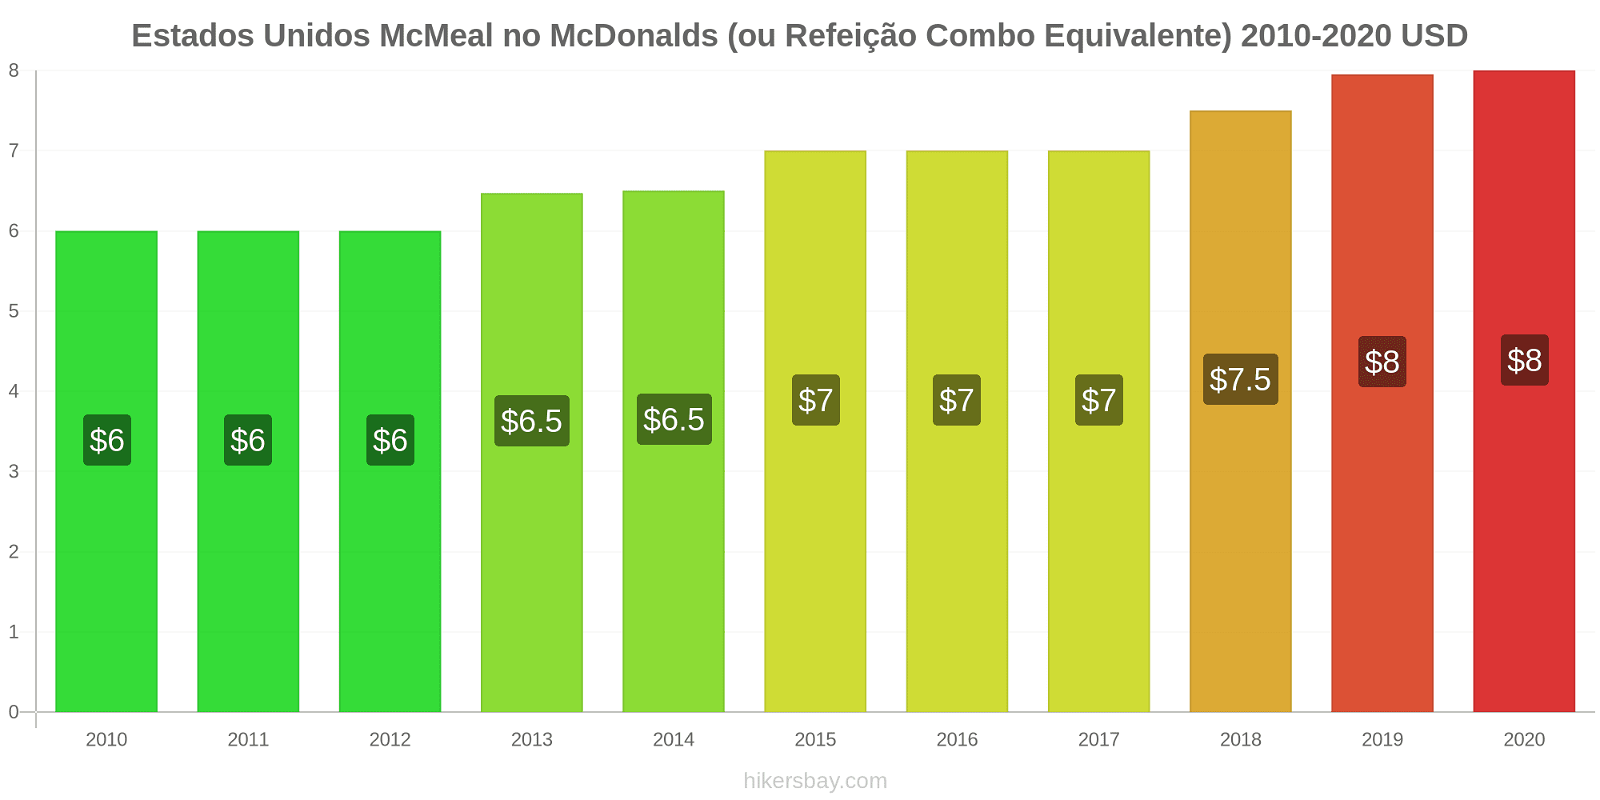 Estados Unidos variação de preço McMeal no McDonald ' s (ou refeição Combo equivalente) hikersbay.com